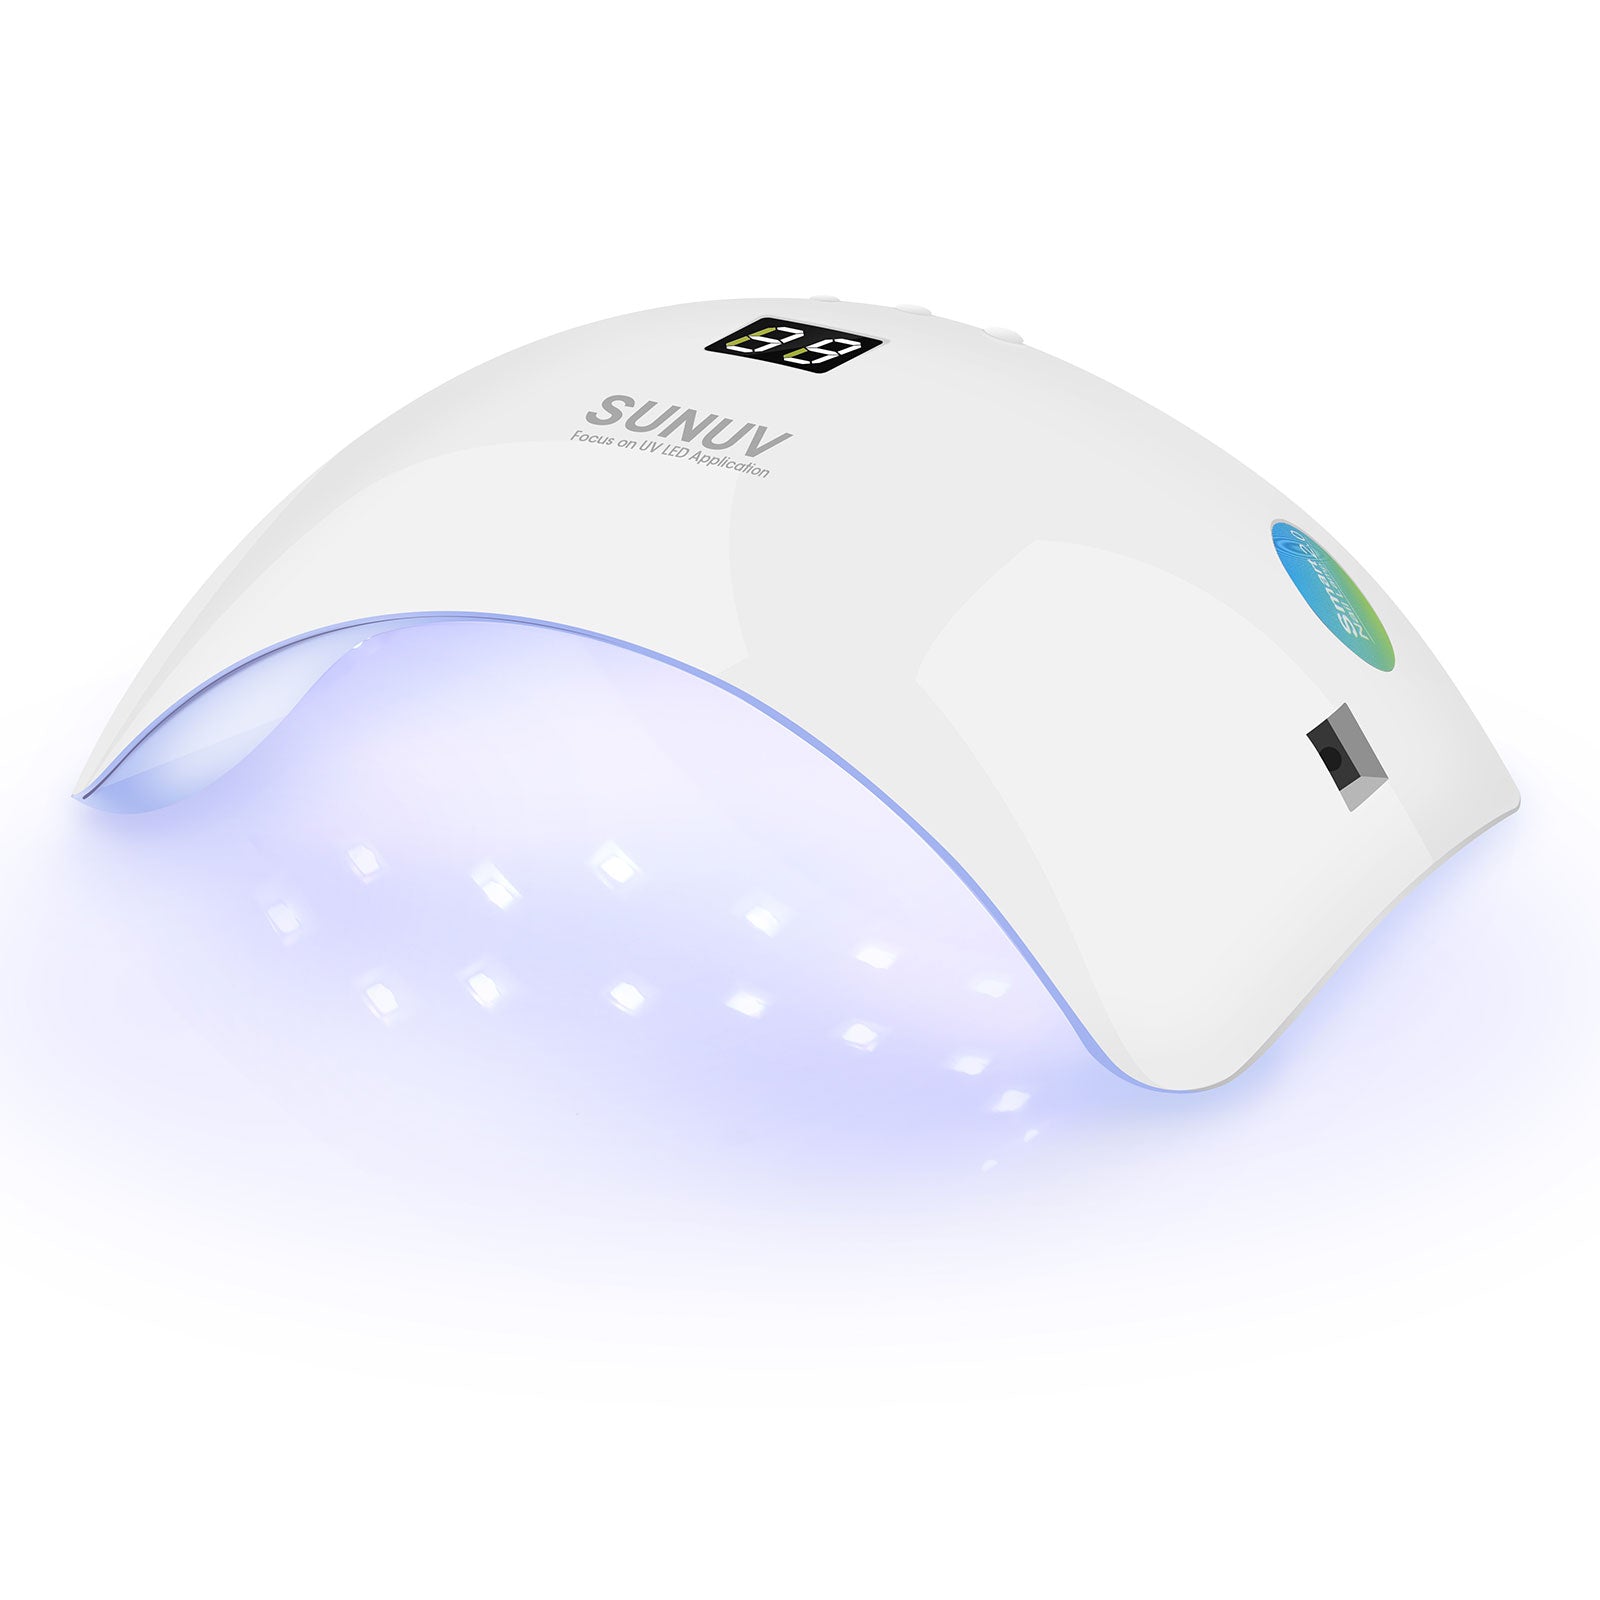 SUNUV SUN8 Smart 2.0 UV LED Nail Lamp – 59S® Official Store